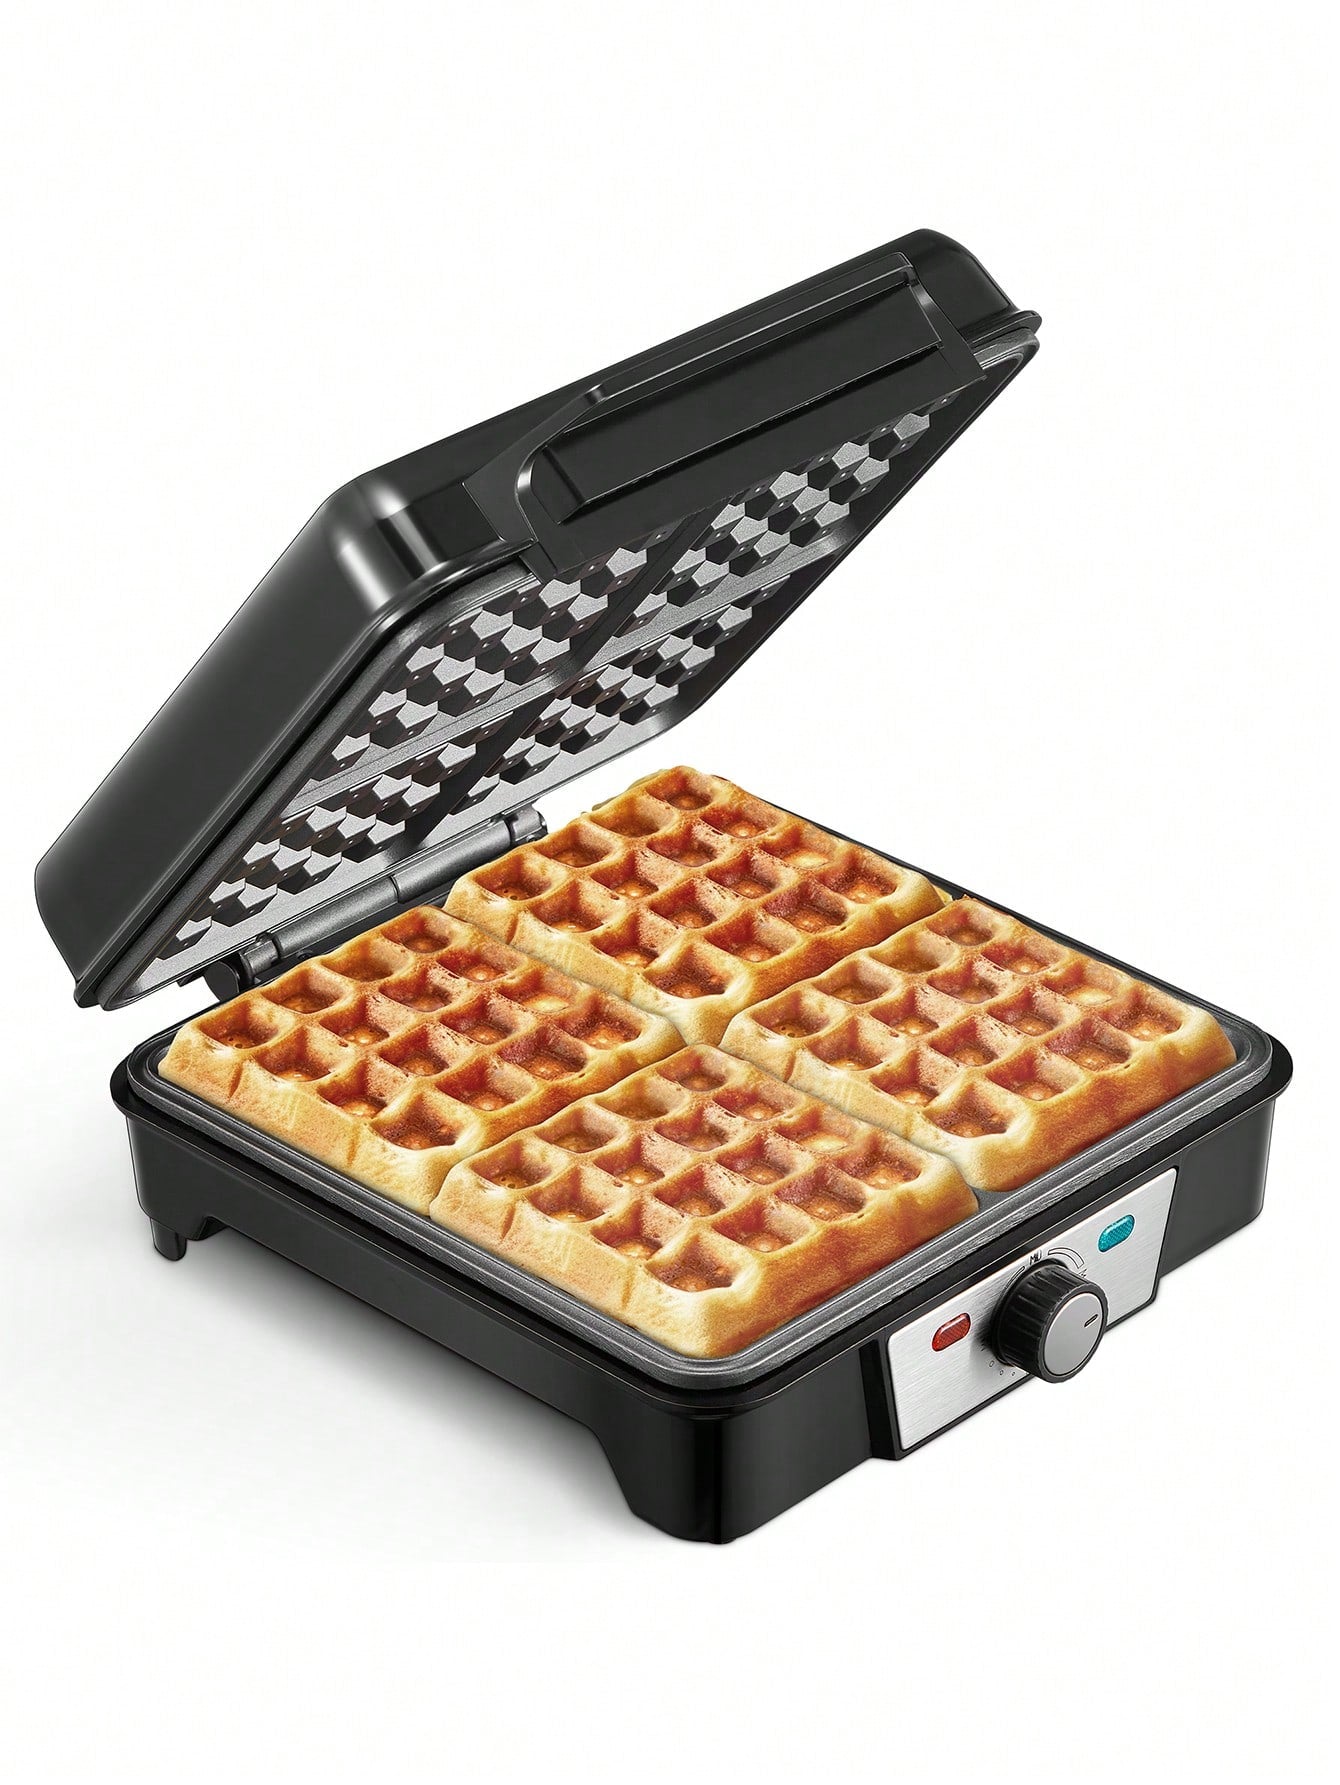 1pc Mini Waffle Maker, Non-stick Waffle Iron, Perfect For Kids